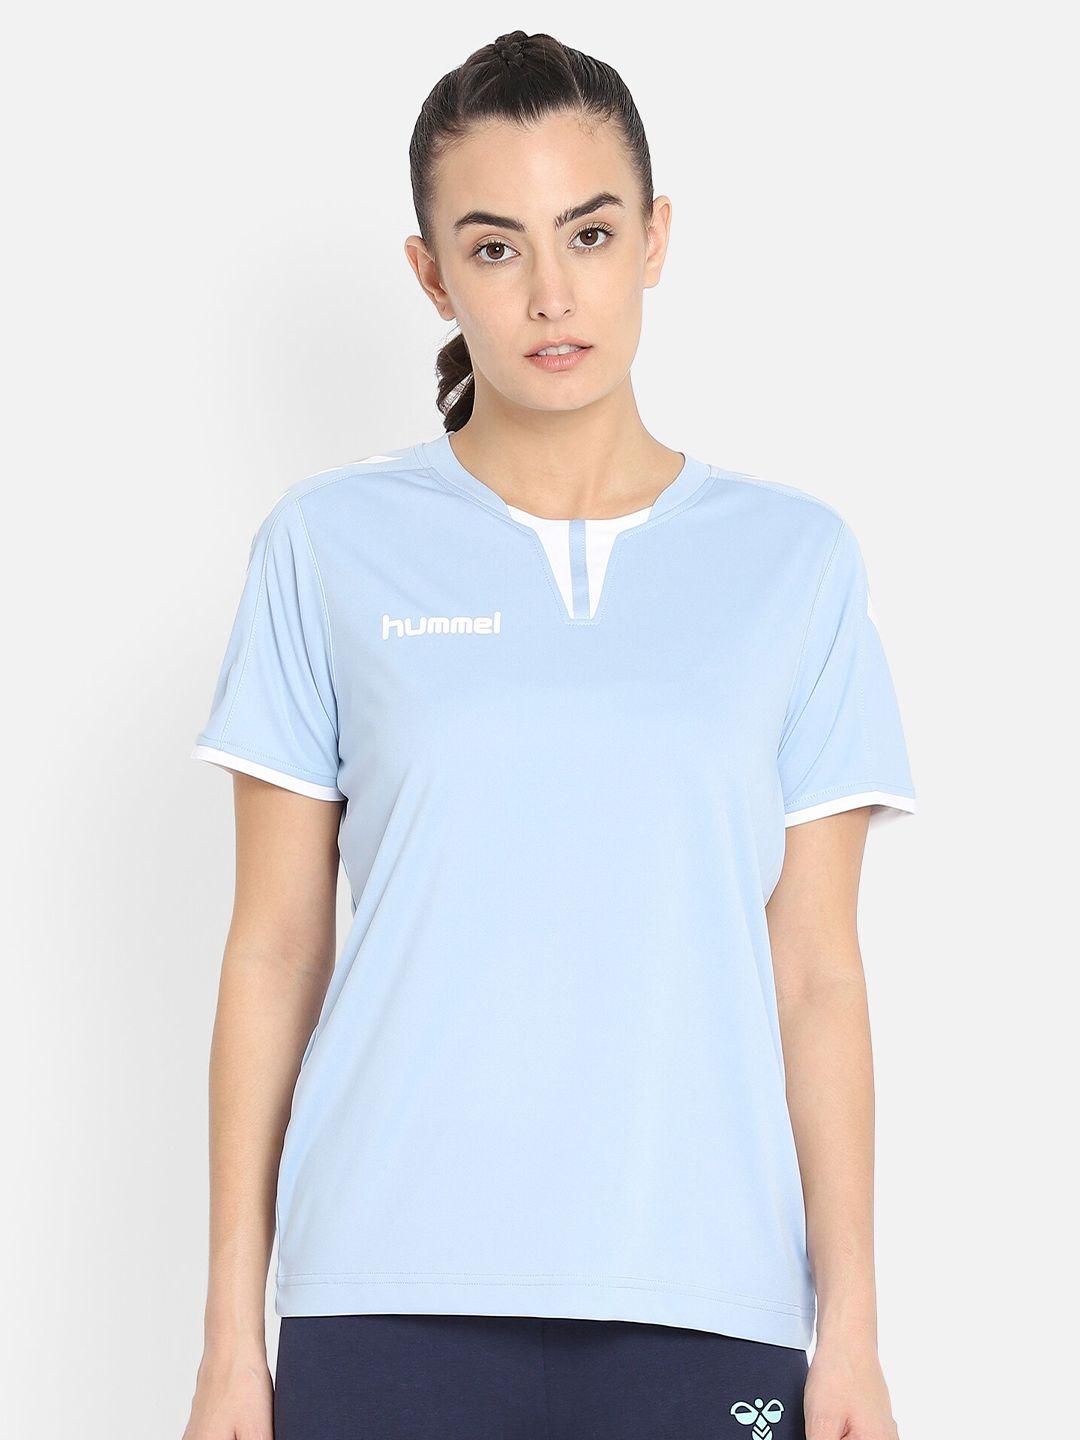 hummel women blue brand logo sports t-shirt